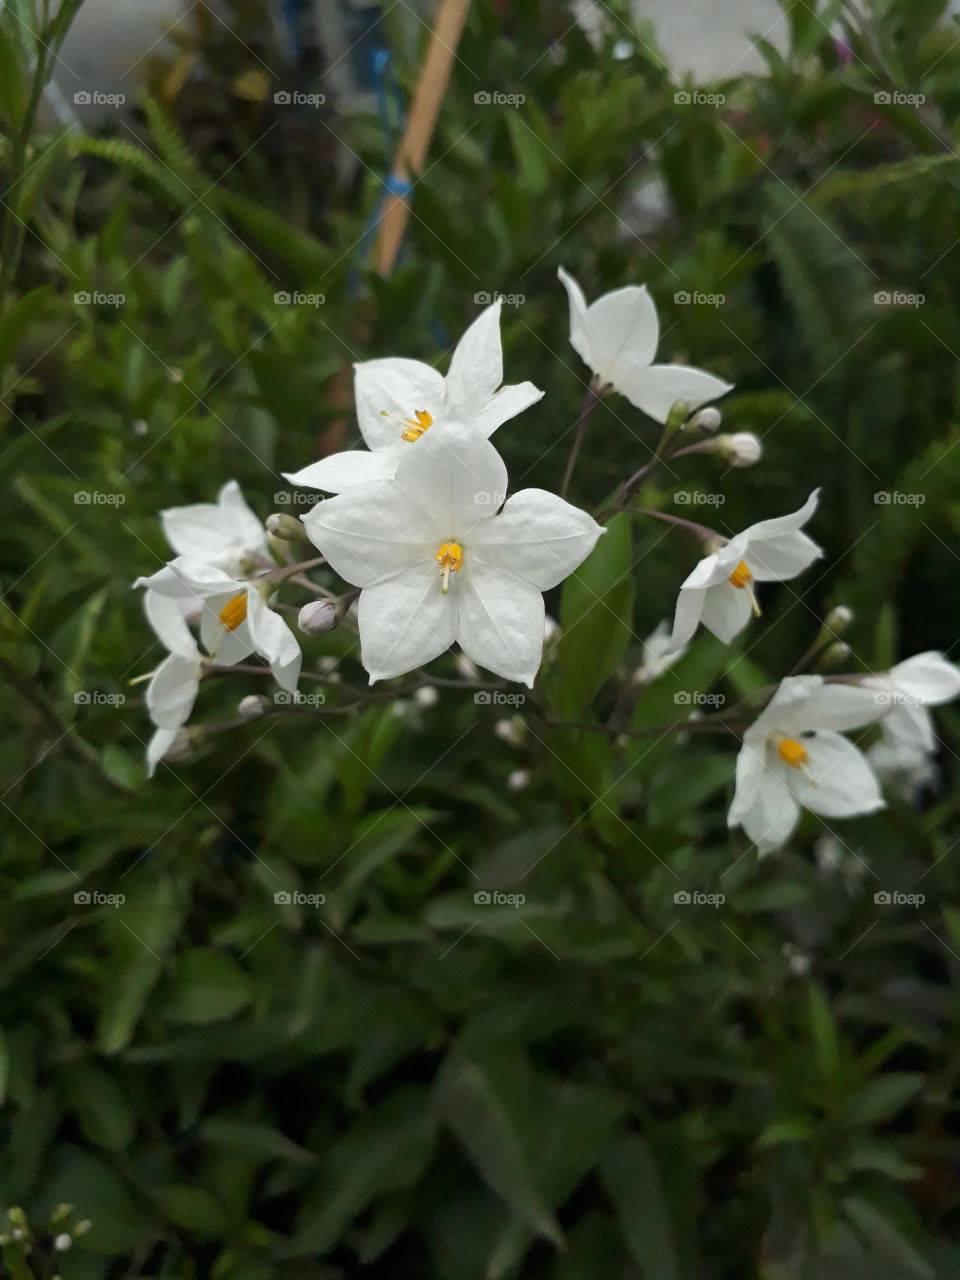 white flower among green leaves